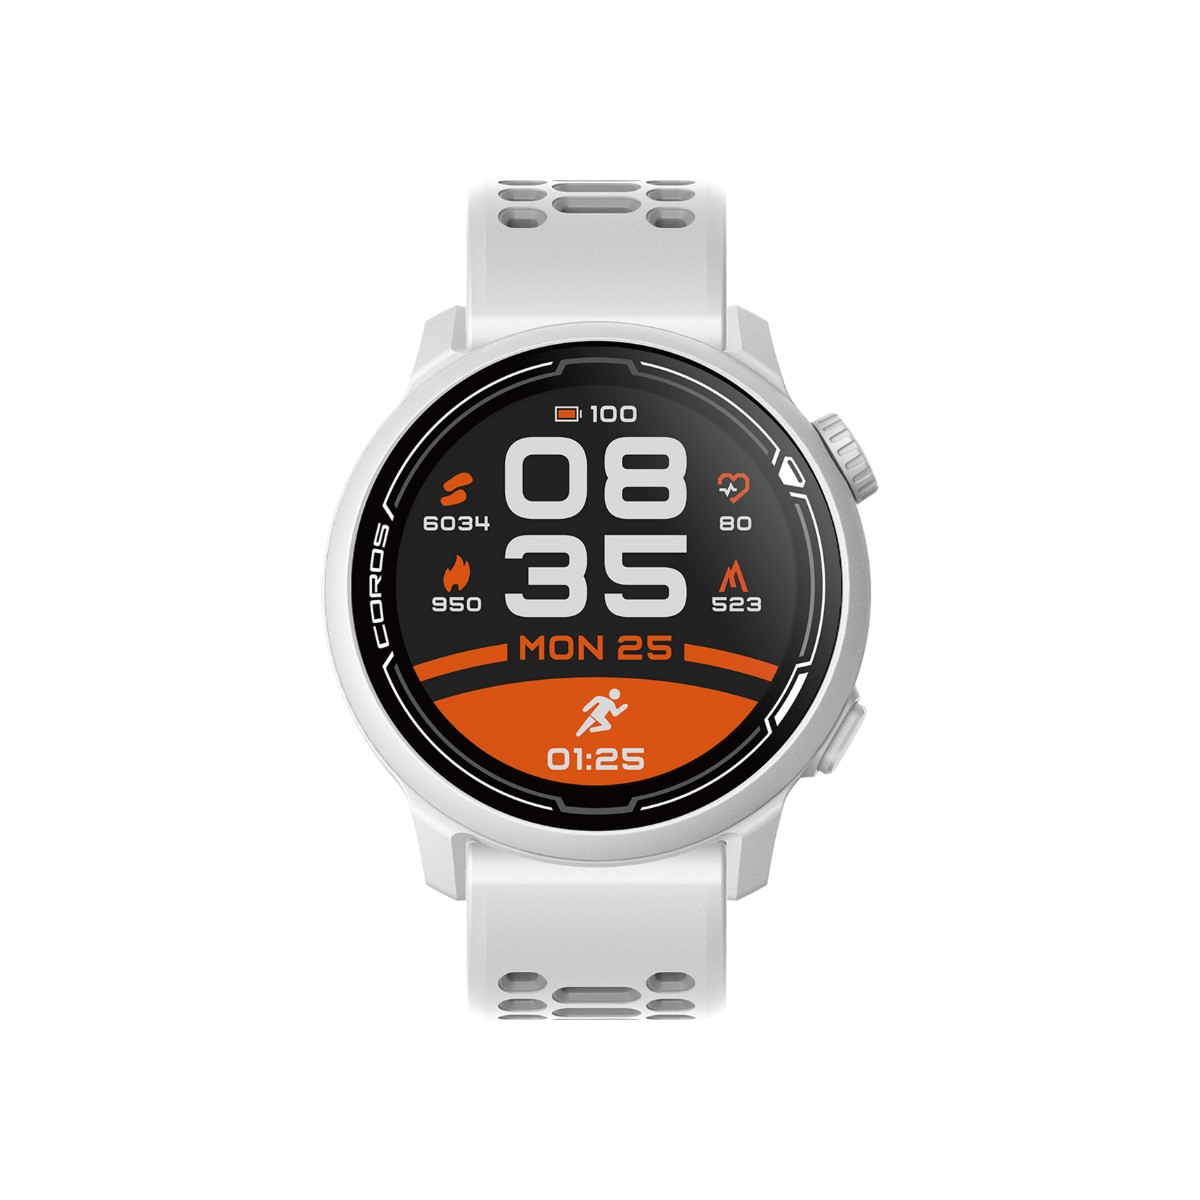 Relógio Coros Pace 2 Premium GPS Branco